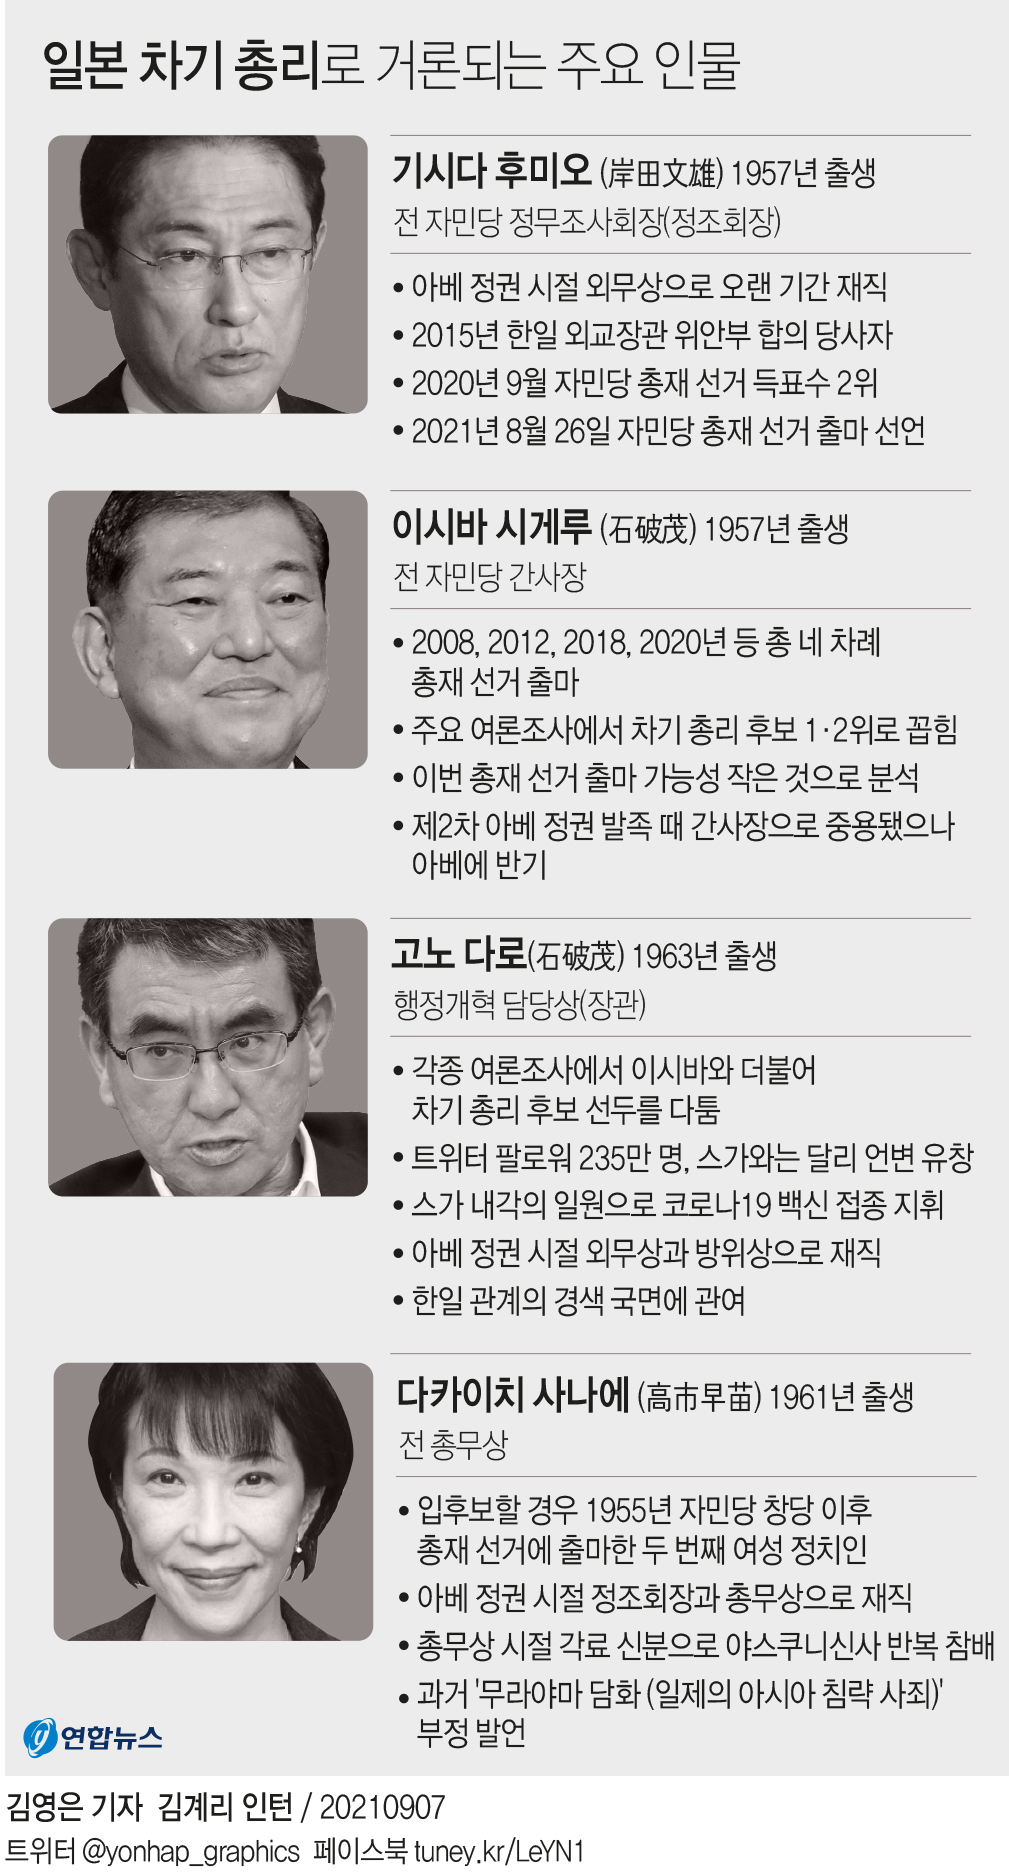 [그래픽] 일본 차기 총리로 거론되는 주요 인물